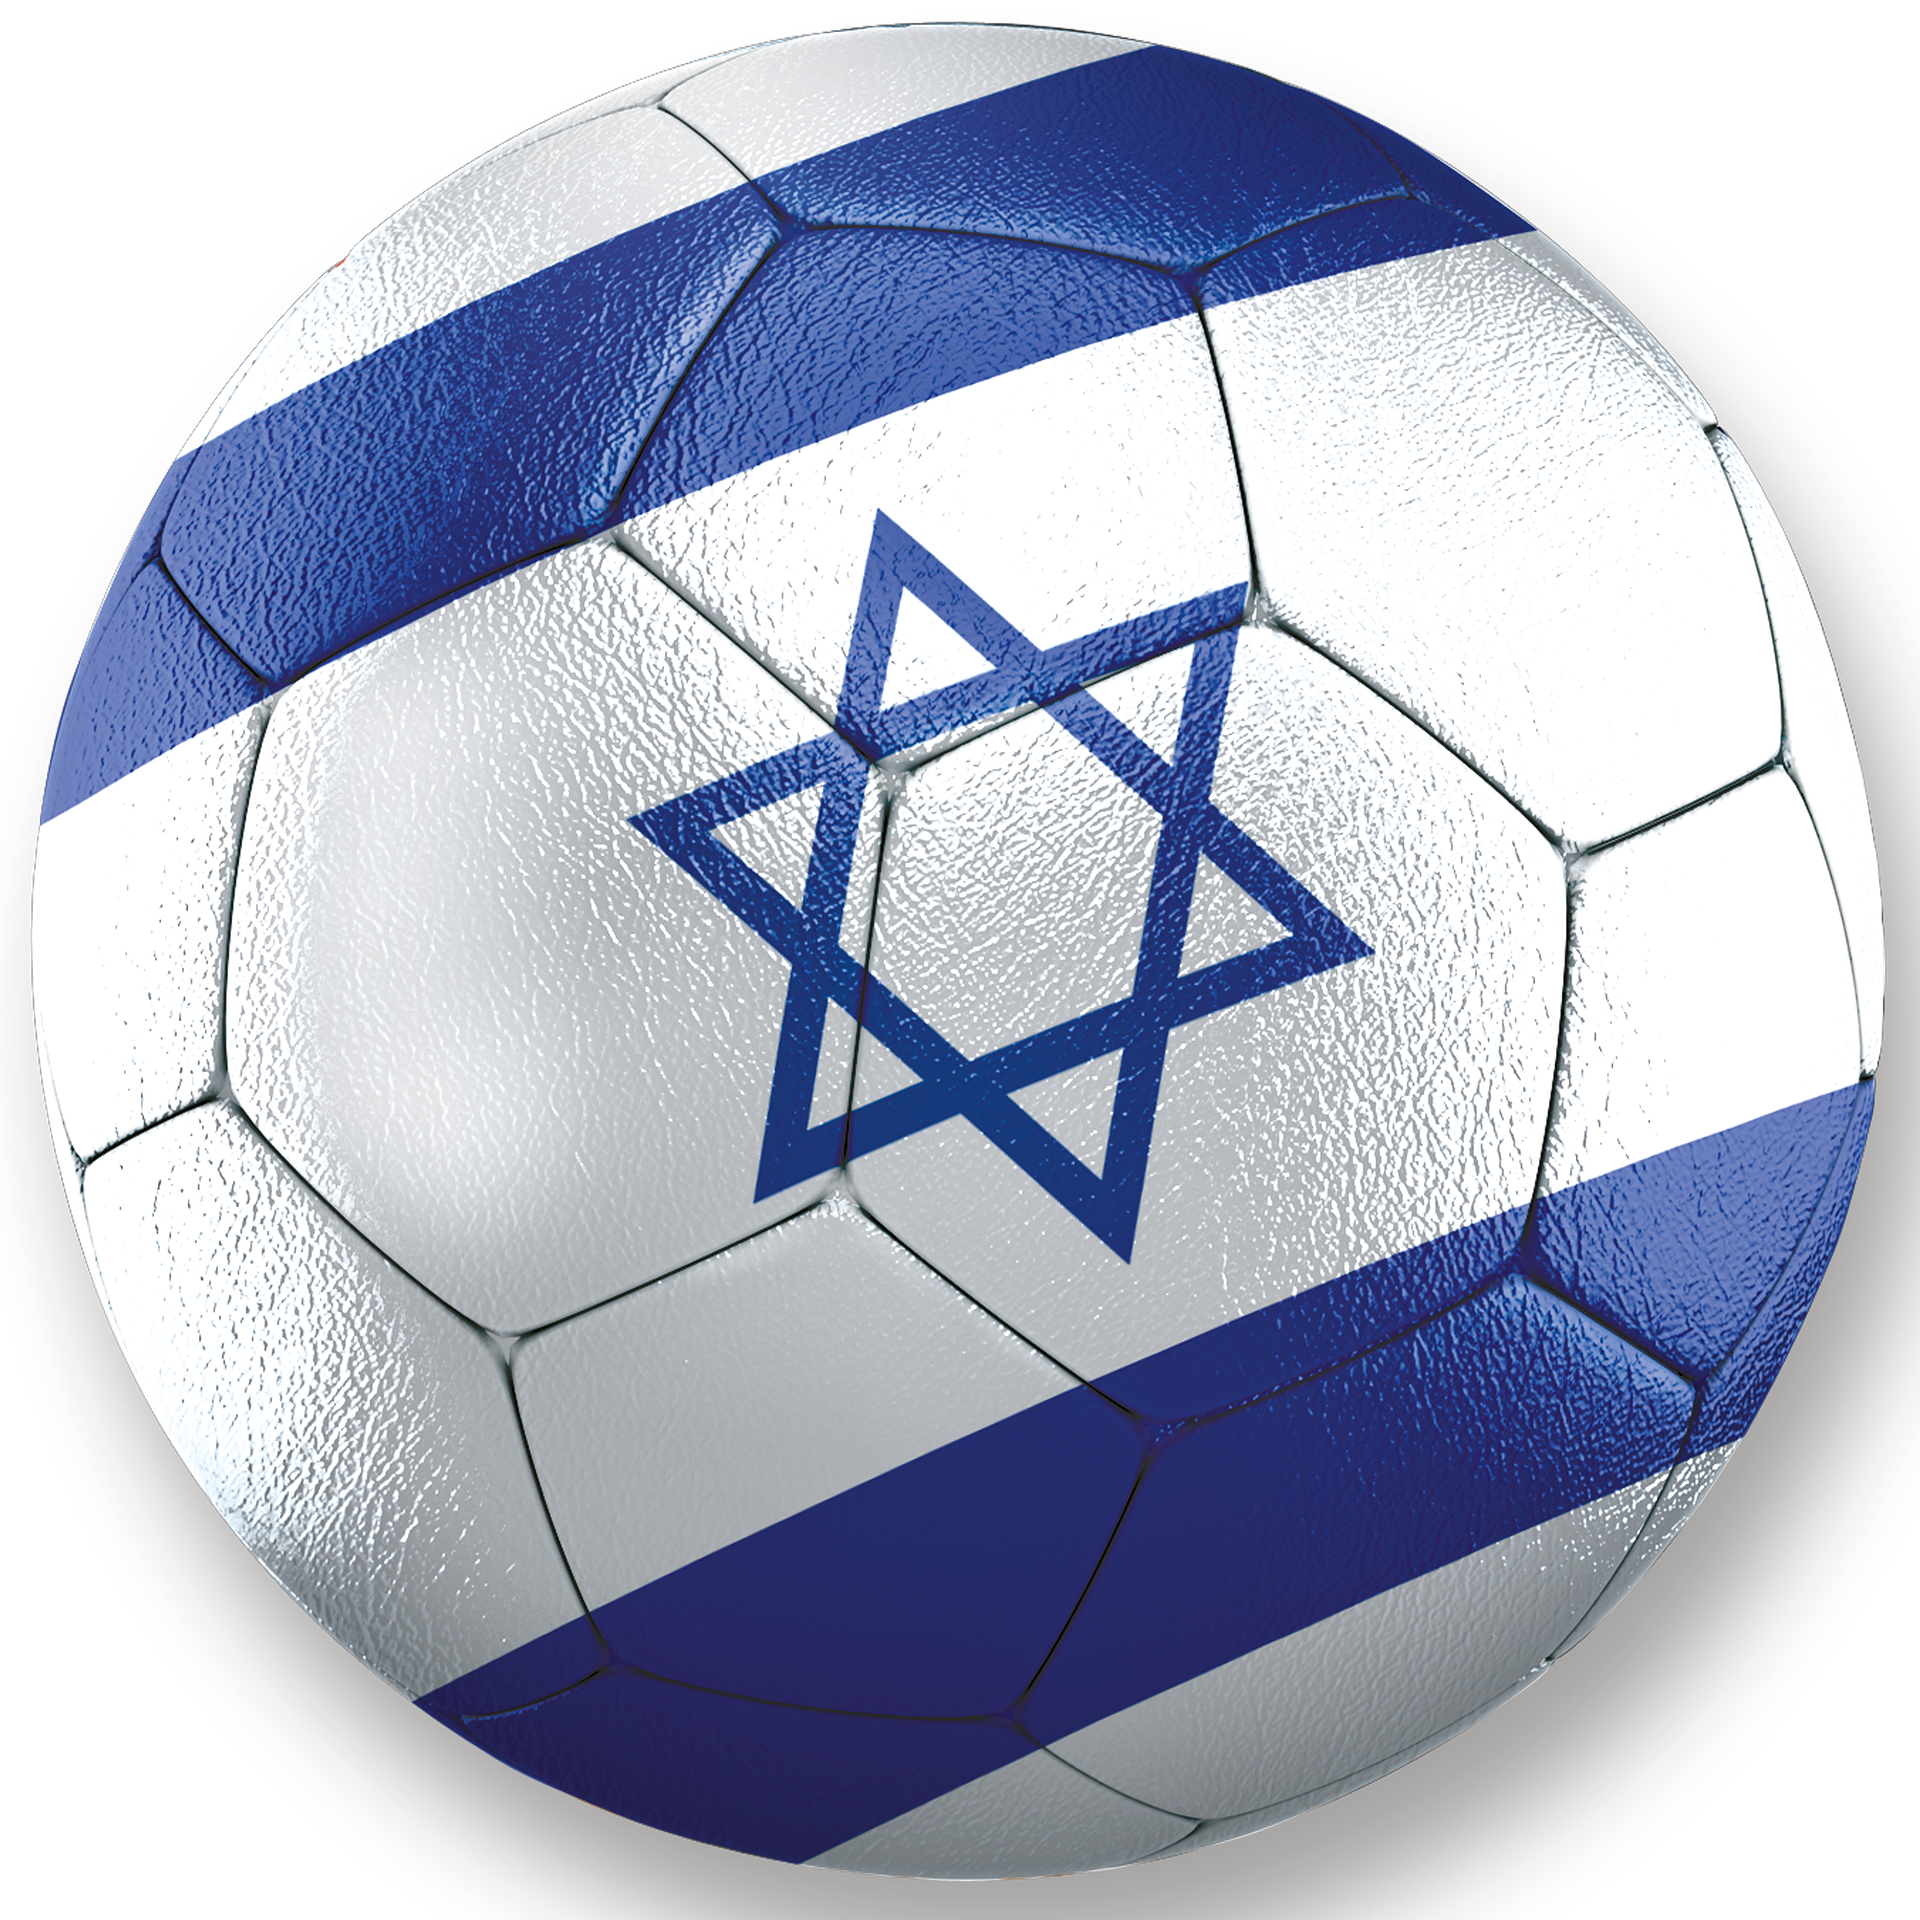 Fußball mit Judenstern (c) Pixabay.com